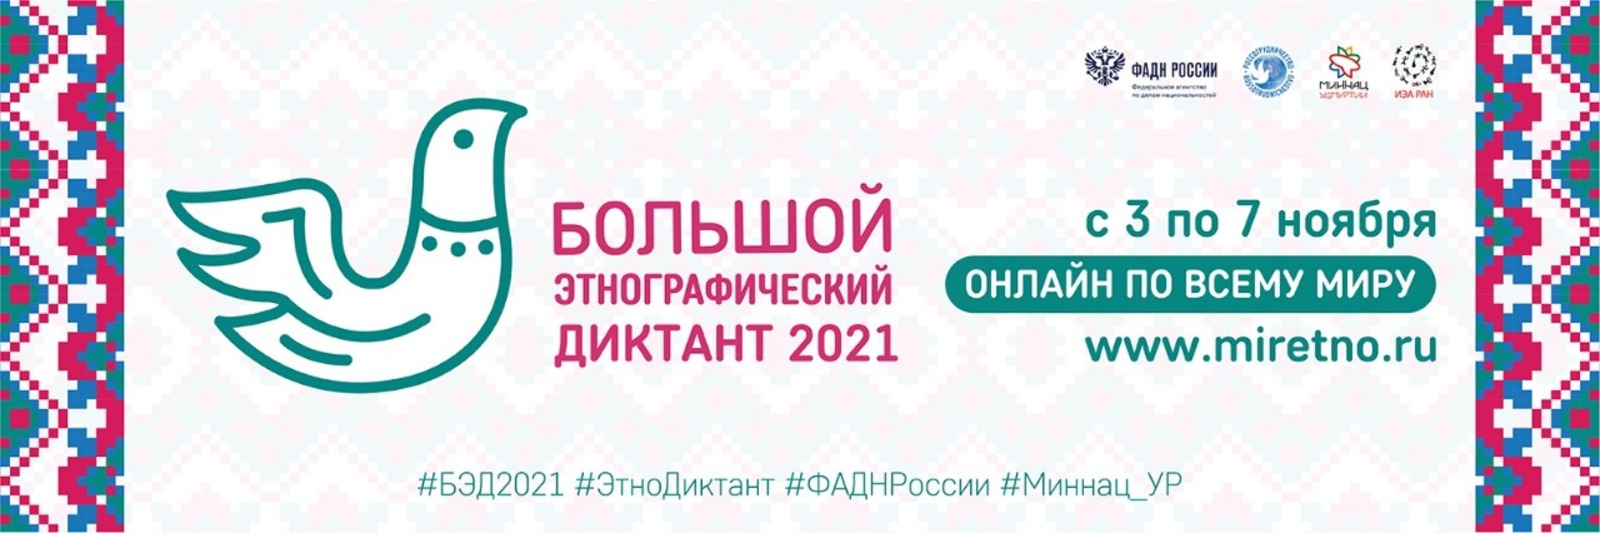 Башкортостан присоединяется к участию в Большом этнографическом диктанте